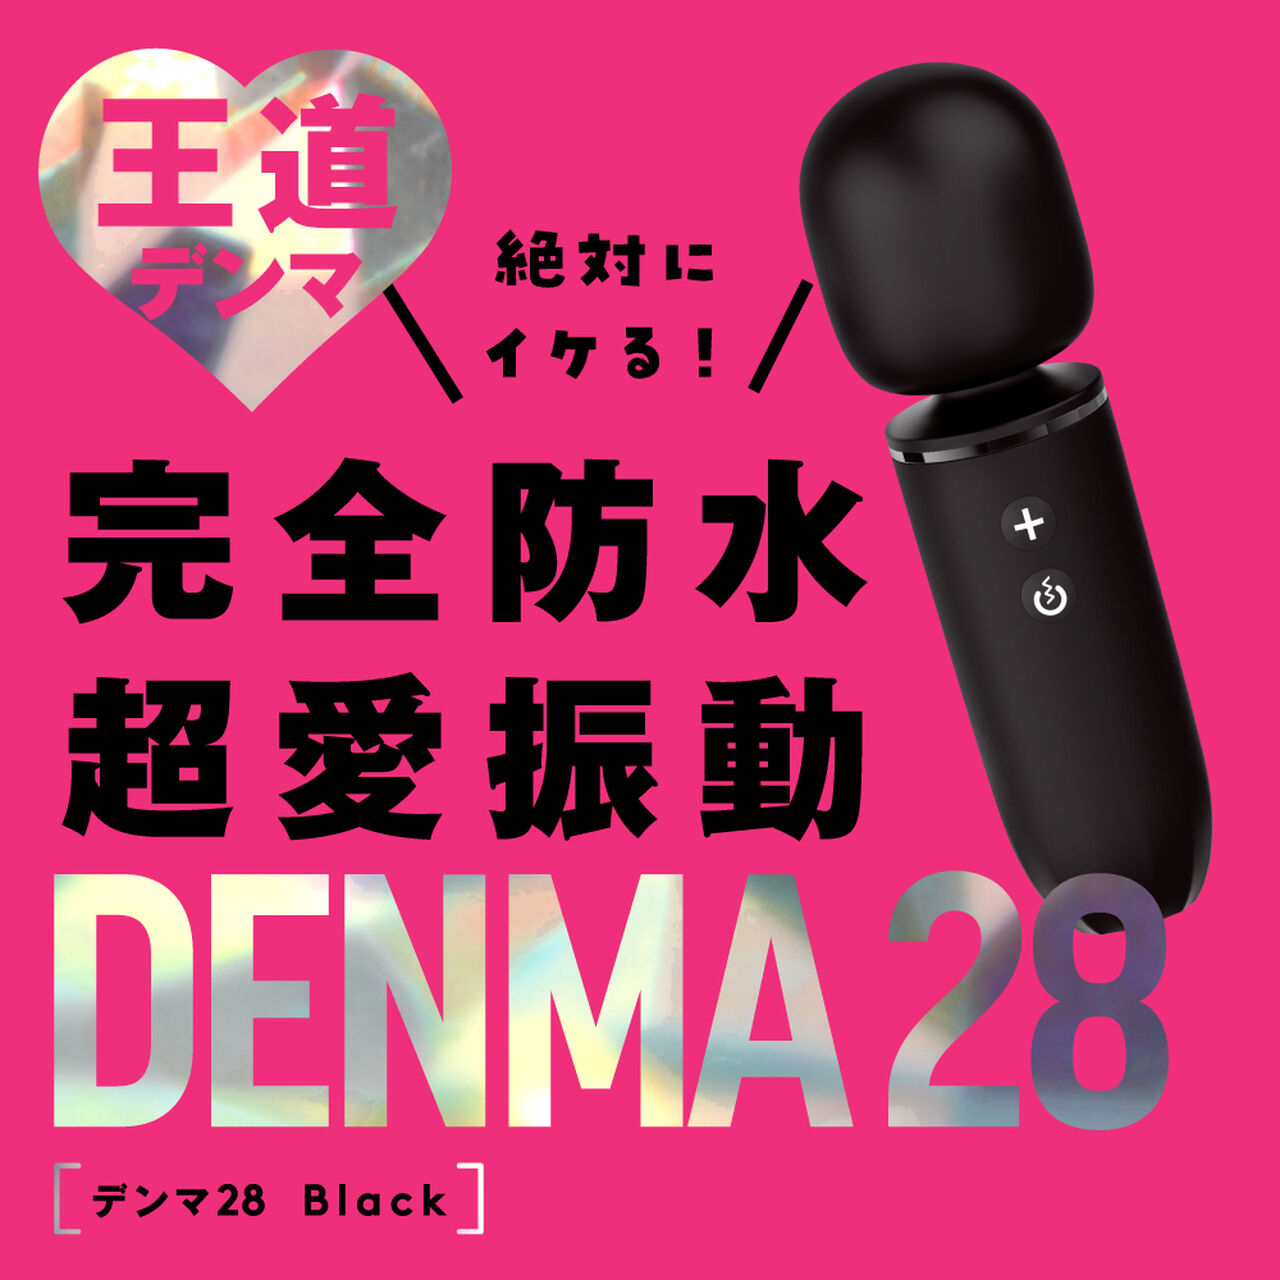 DENMA 28 black,, large image number 1